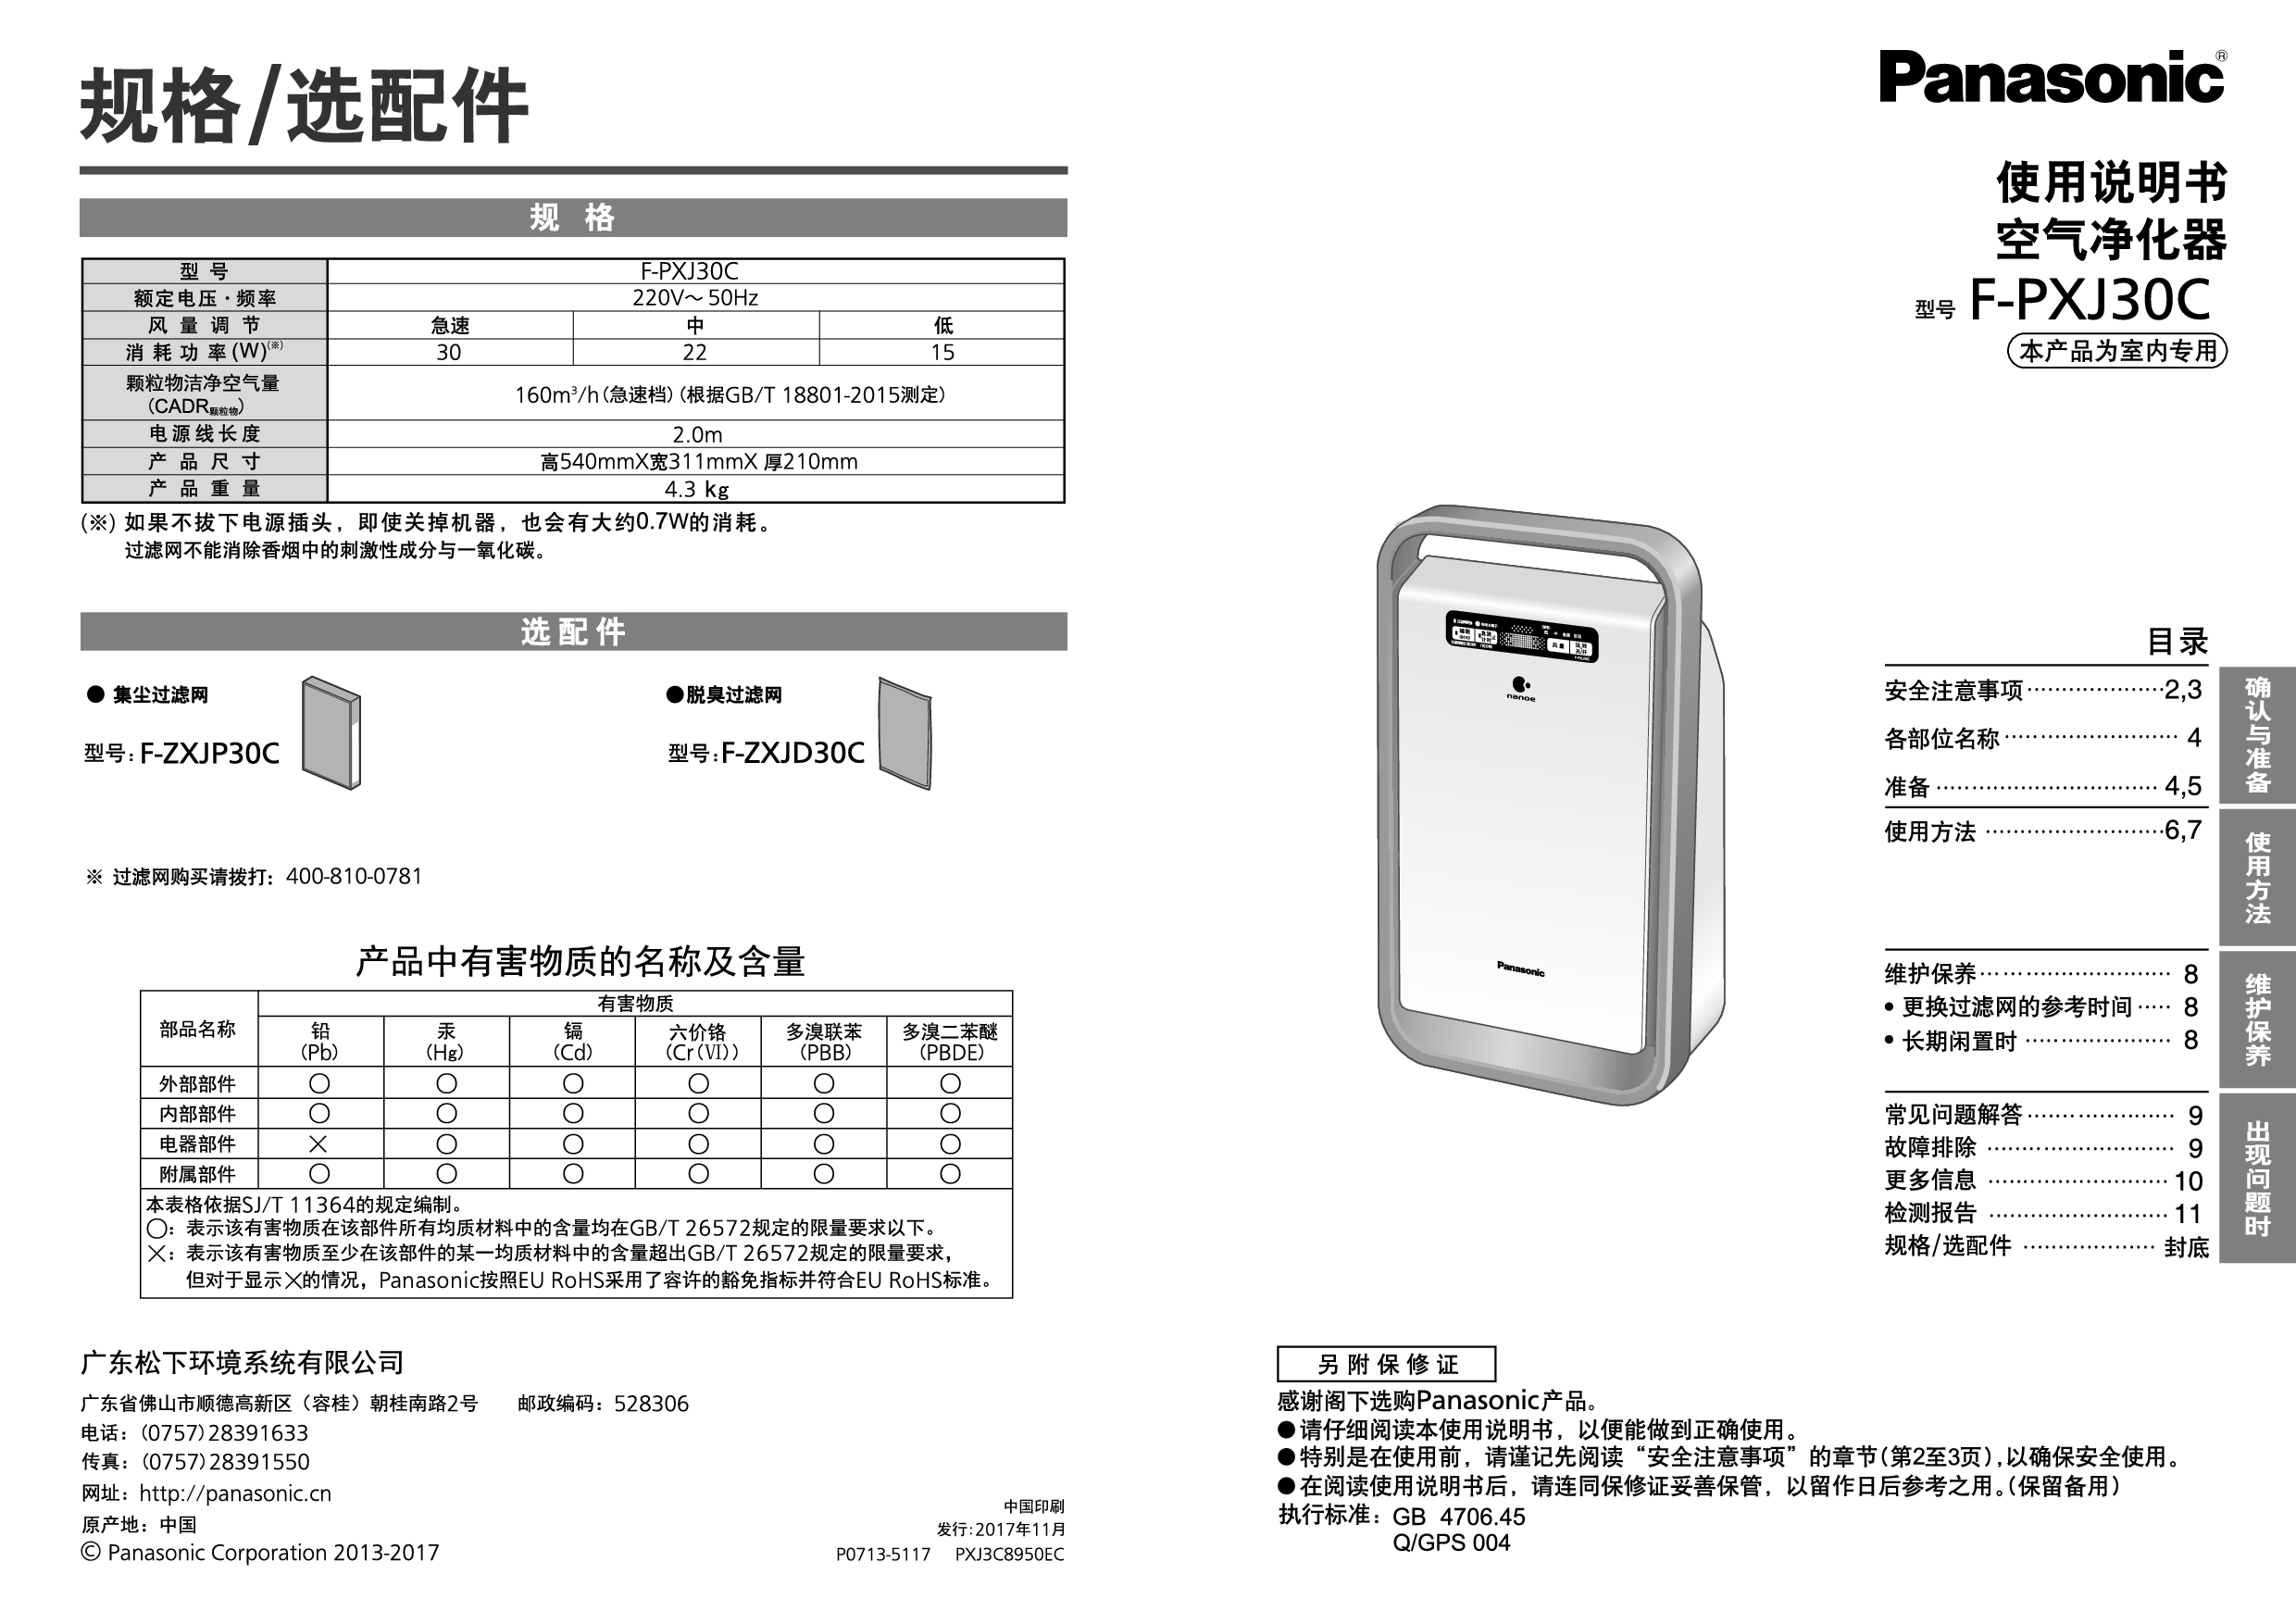 松下 Panasonic F-PXJ30C 使用说明书 封面